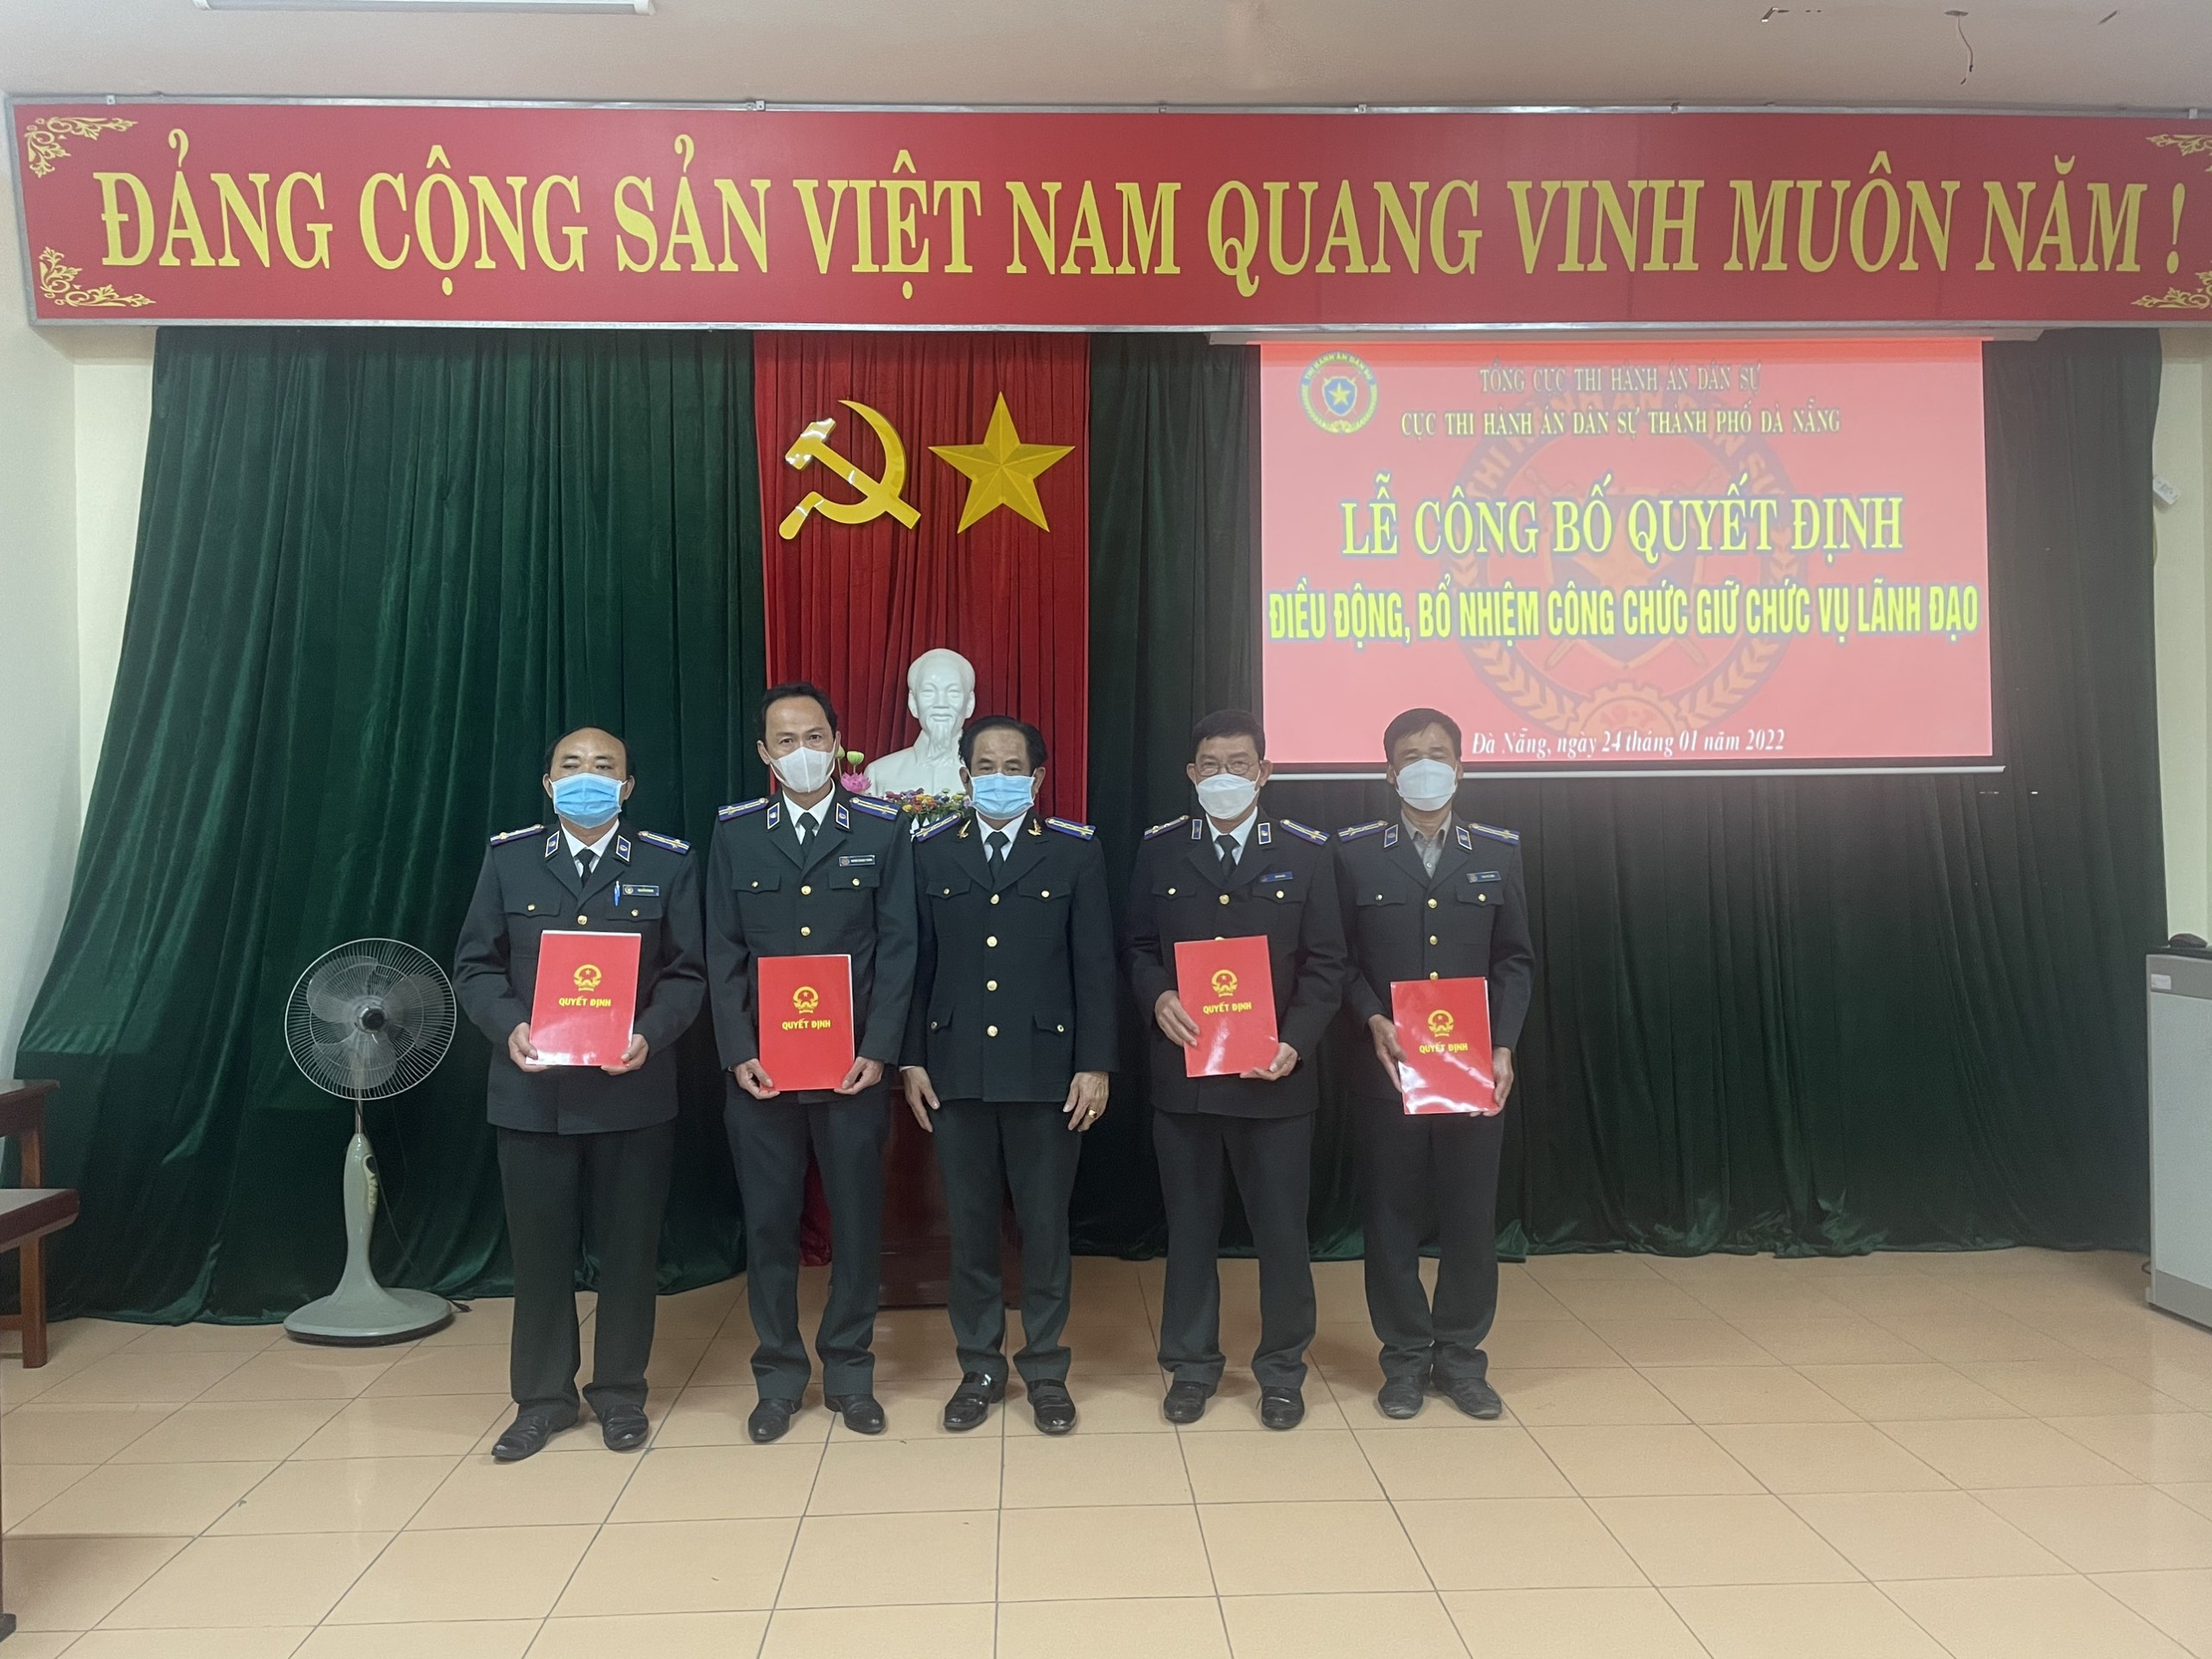 Cục Thi hành án dân sự thành phố Đà Nẵng công bố Quyết định điều động, bổ nhiệm công chức giữ chức vụ lãnh đạo